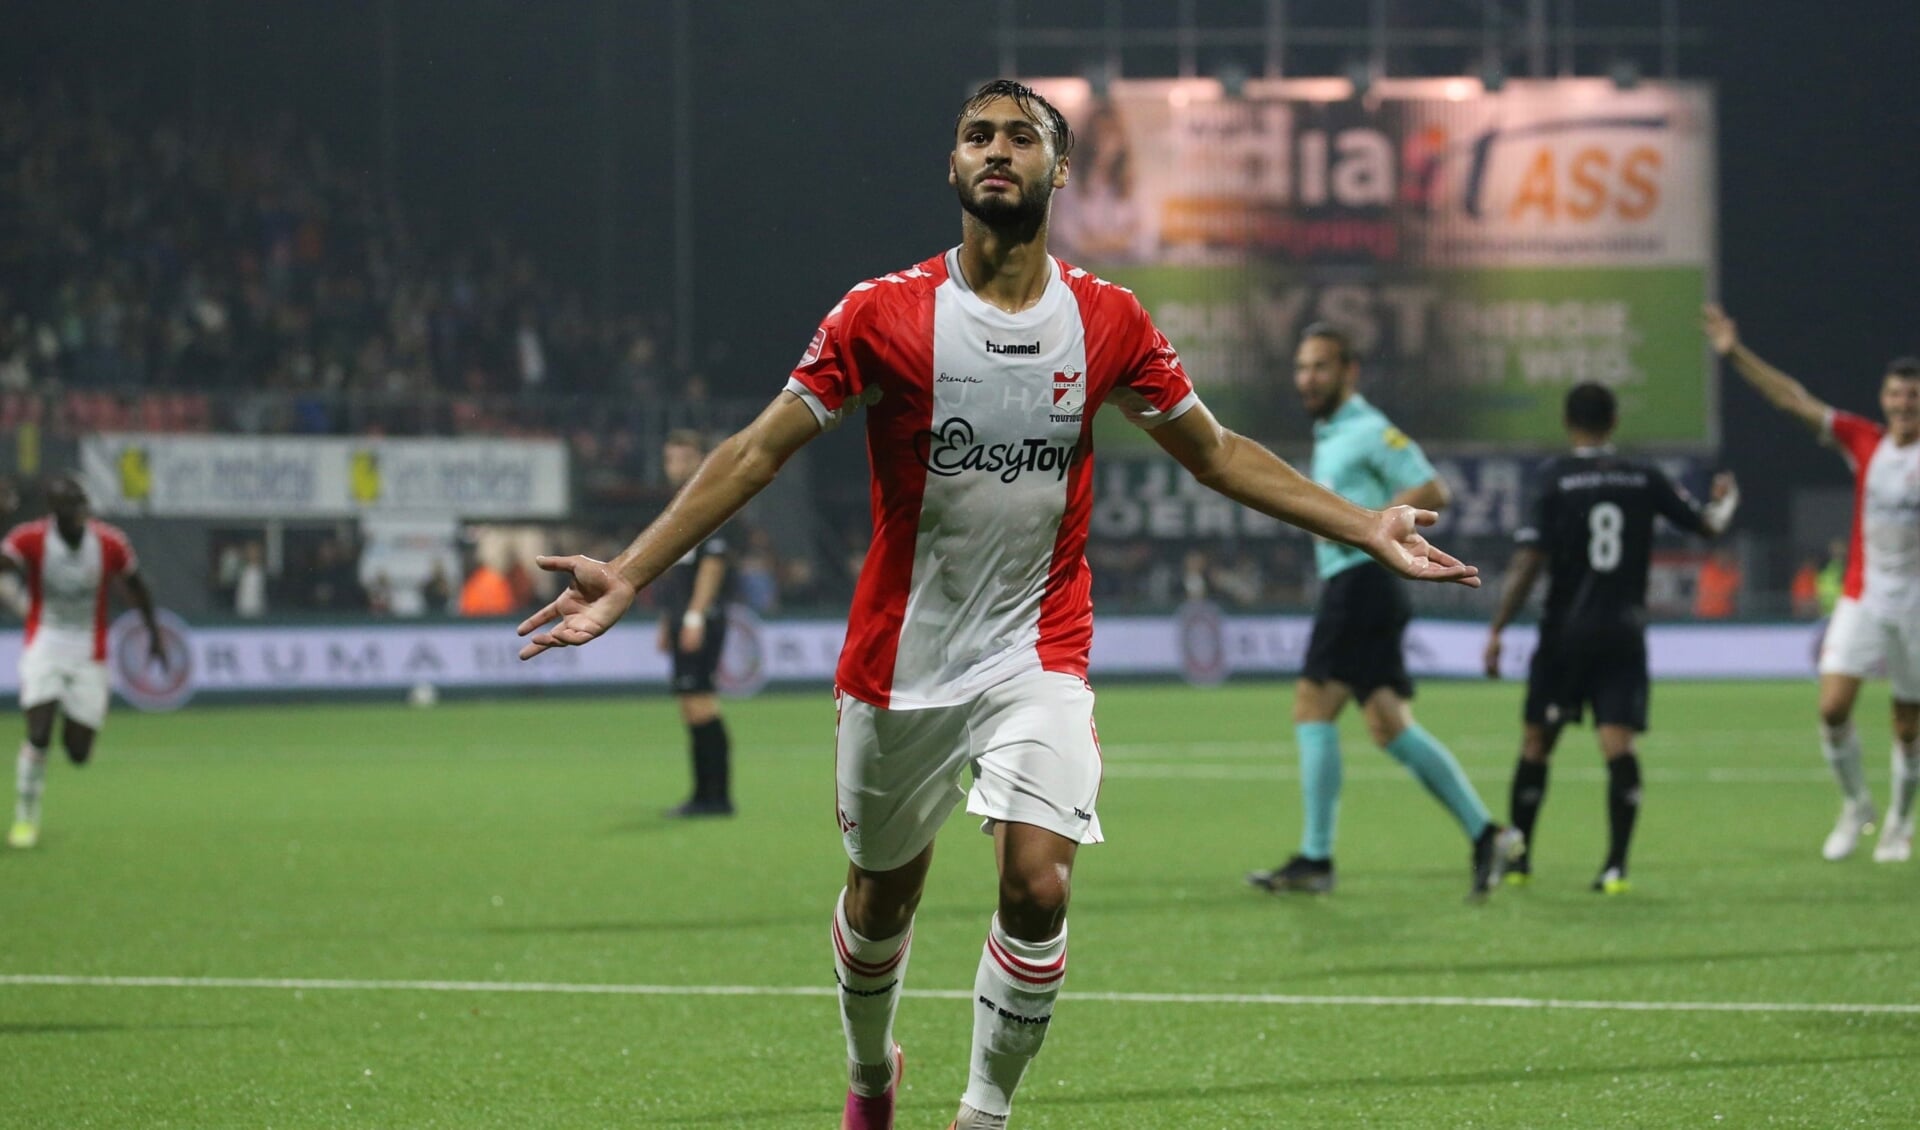 Azzeddine Toufiqui maakte volgens de supporters afgelopen seizoen de mooiste goal voor FC Emmen. Foto: FC Emmen.